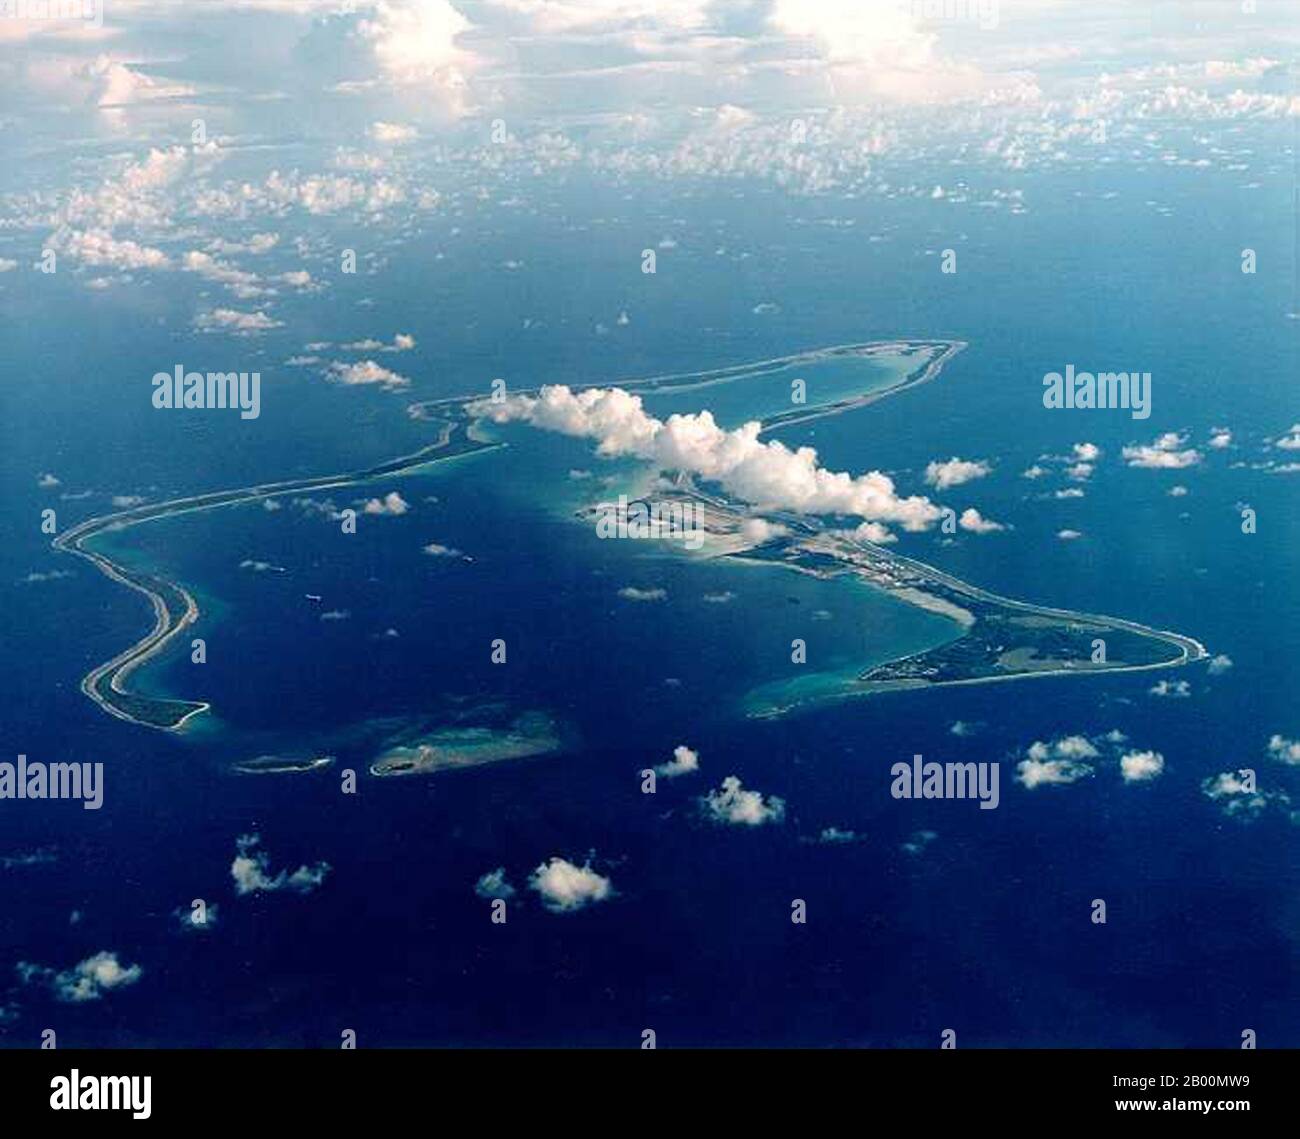 BIOT (territorio britannico dell'Oceano Indiano): Base di Diego Garcia. Il territorio britannico dell'Oceano Indiano (BIOT) o delle Isole Chagos (ex Isole del petrolio) è un territorio d'oltremare del Regno Unito situato nell'Oceano Indiano, a metà strada tra l'Africa e l'Indonesia. Il territorio comprende un gruppo di sette atolli che comprende più di 60 singole isole, situate a circa 500 chilometri (310 miglia) a sud dell'arcipelago delle Maldive. L'isola più grande è Diego Garcia (area 44 km quadrati), il sito di una struttura militare congiunta del Regno Unito e degli Stati Uniti. Foto Stock